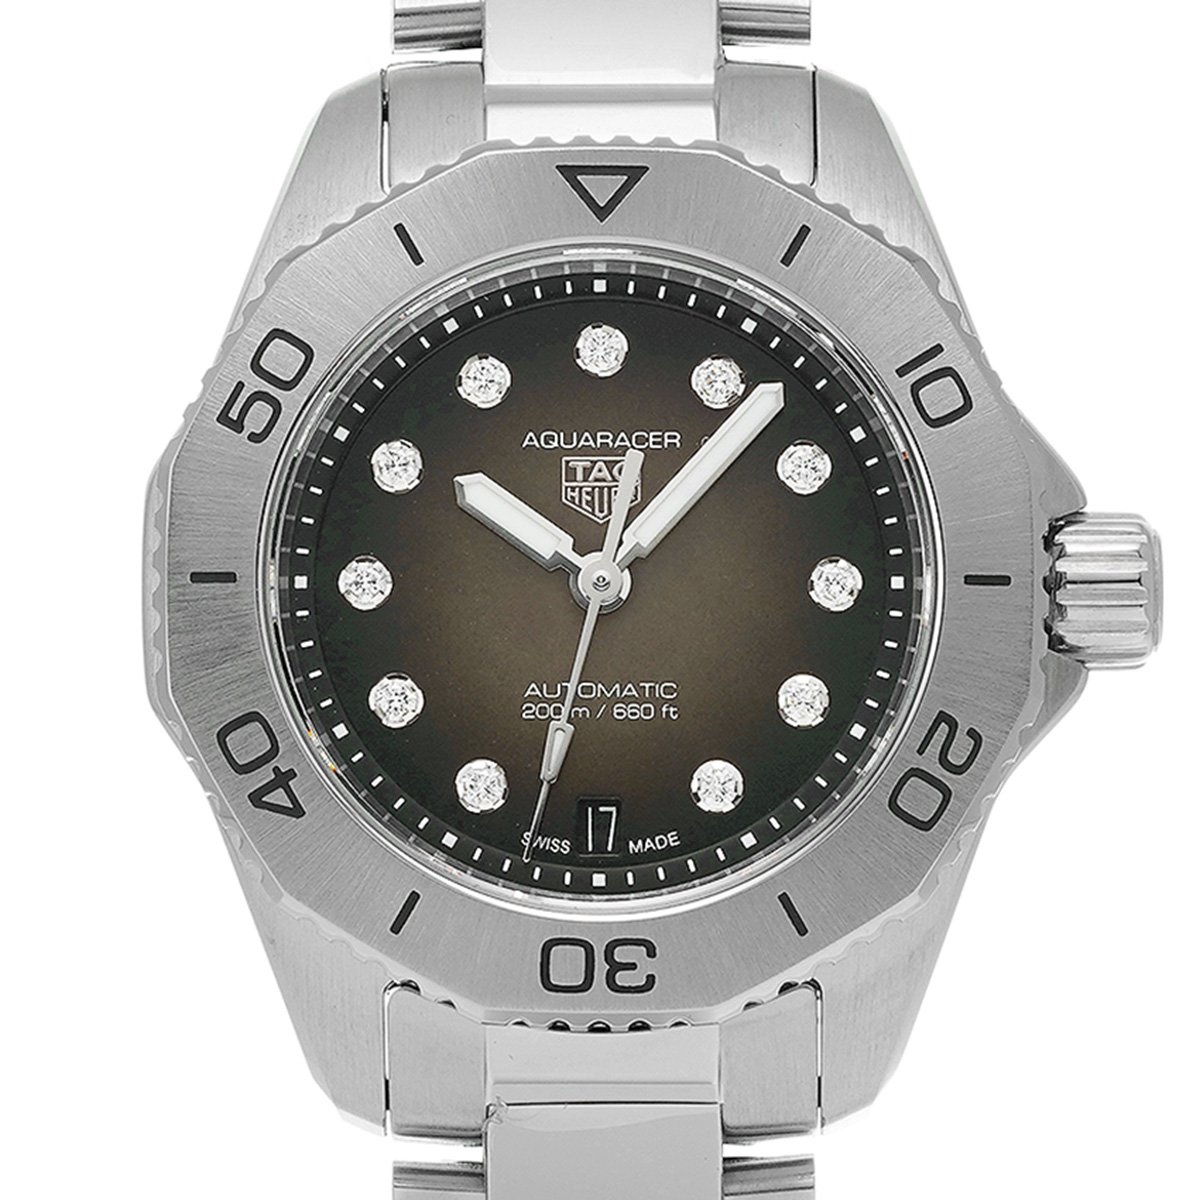 タグ ホイヤー TAG HEUER WBP2410.BA0622 ブラックシェル /ダイヤモンド メンズ 腕時計